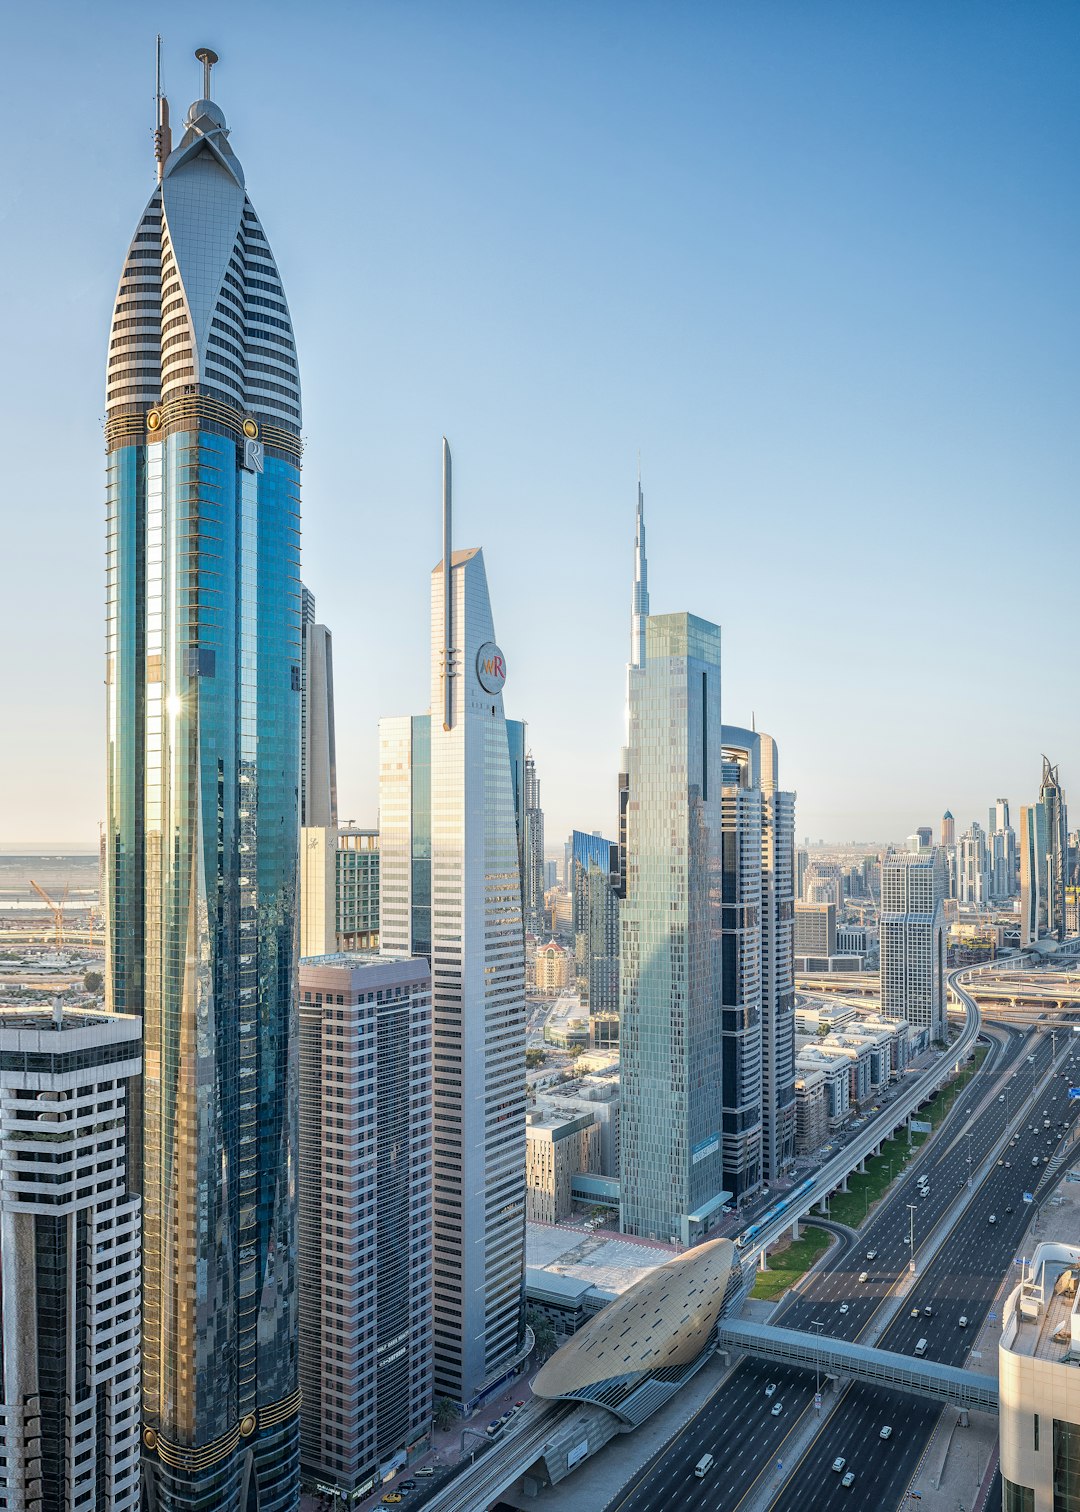 Landmark photo spot Dubai Burj Khalifa Lake - Dubai - United Arab Emirates